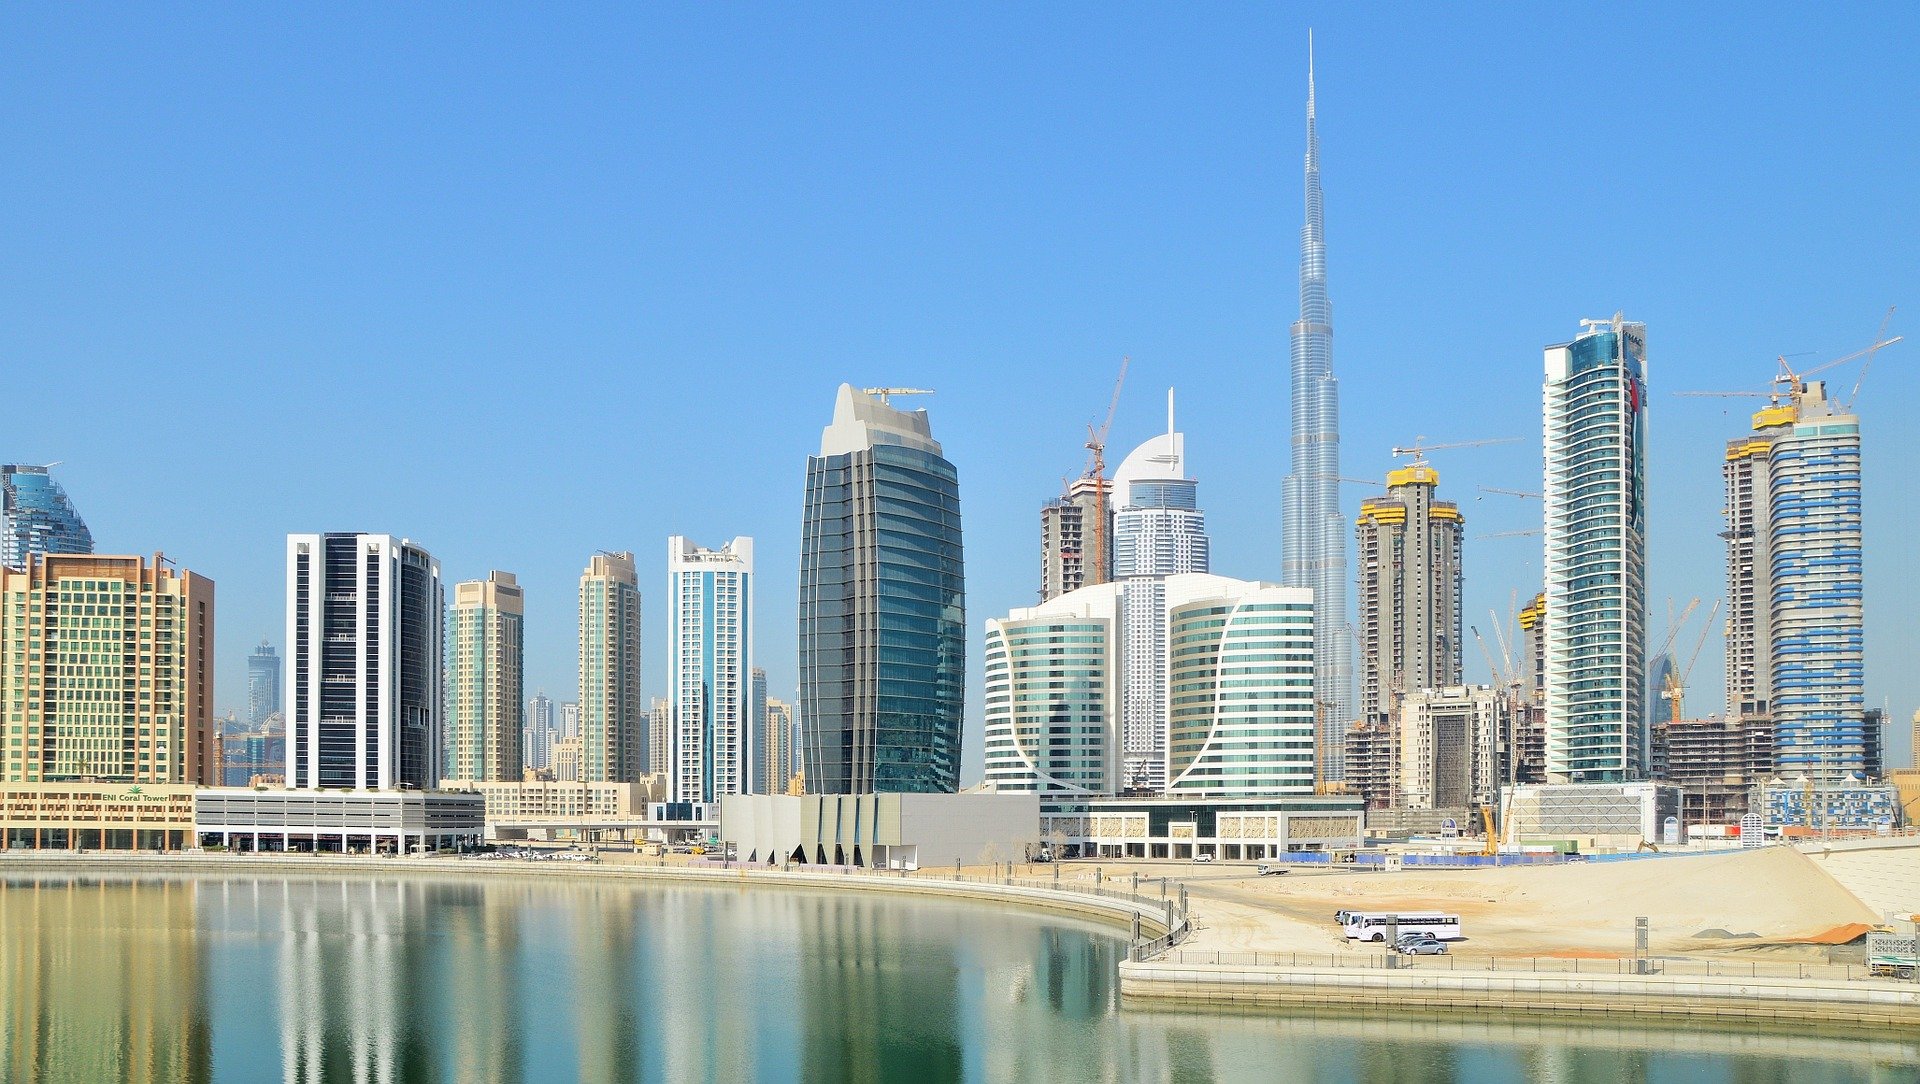 La arquitectura y modernidad son uno de los principales atractivos para personas que buscan estudiar y vivir en Dubái.